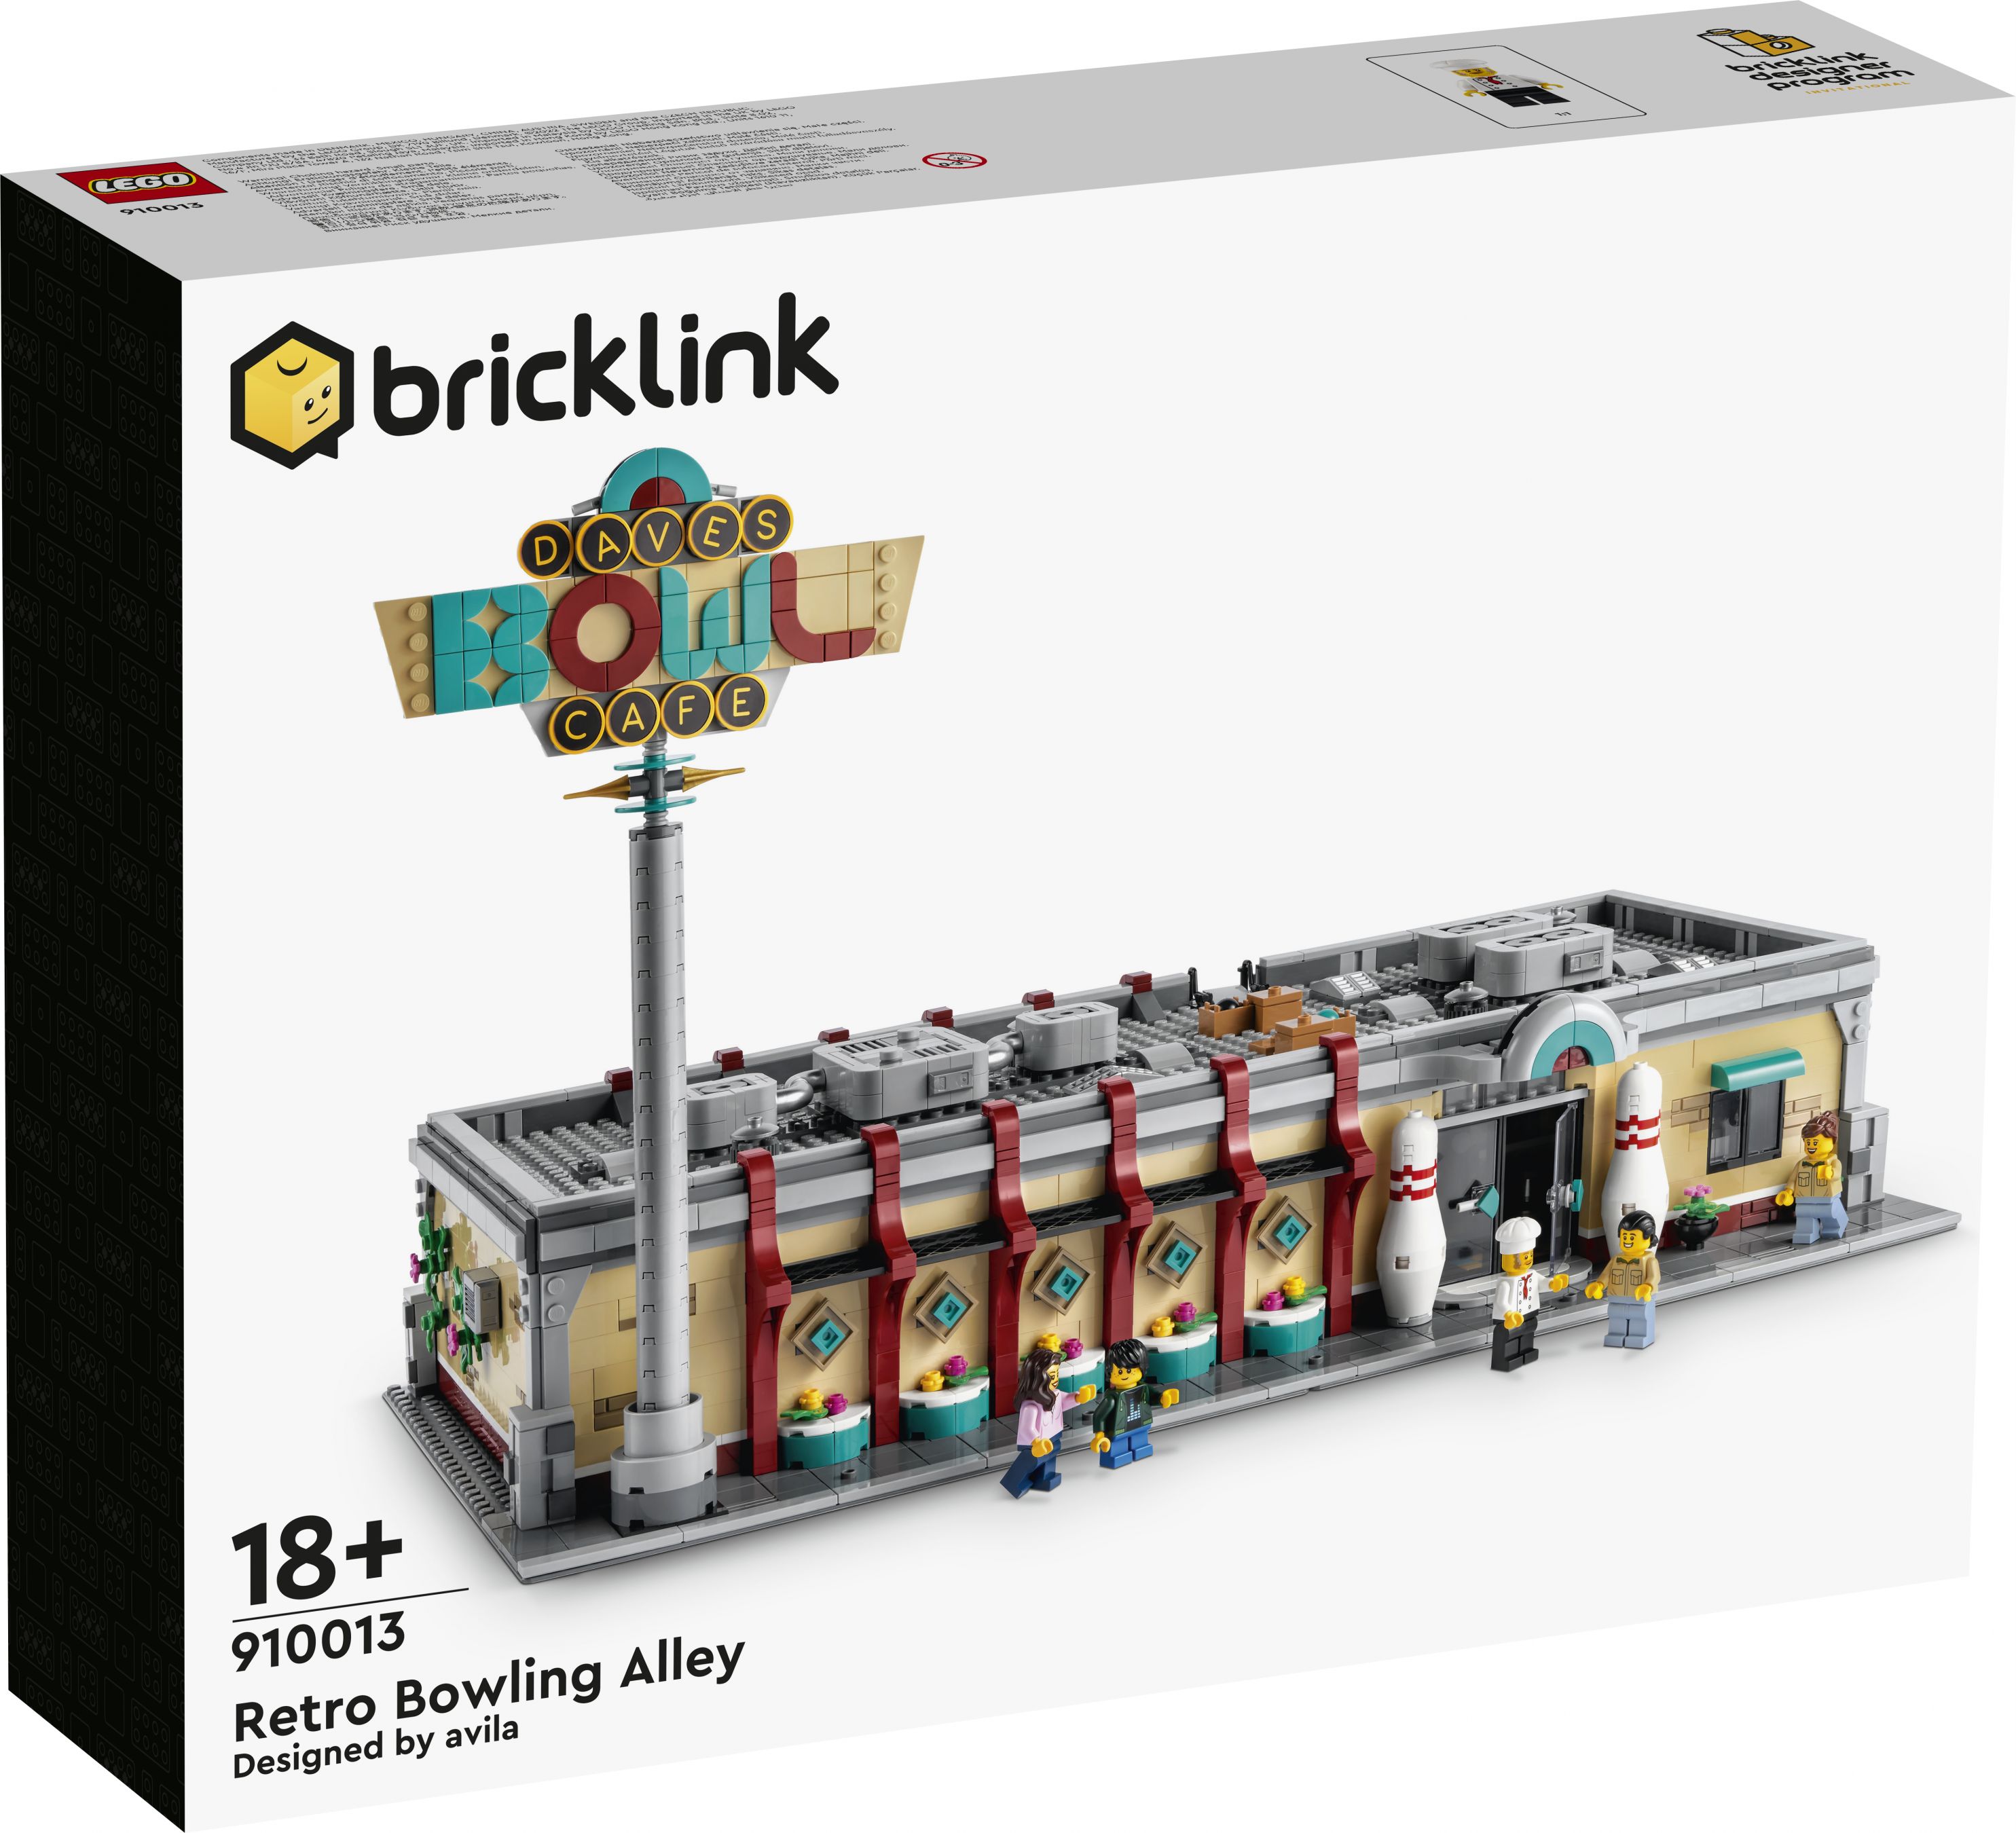 LEGO Bricklink 910013 Retro Bowling Alley LEGO_910013_box1_v29.jpg